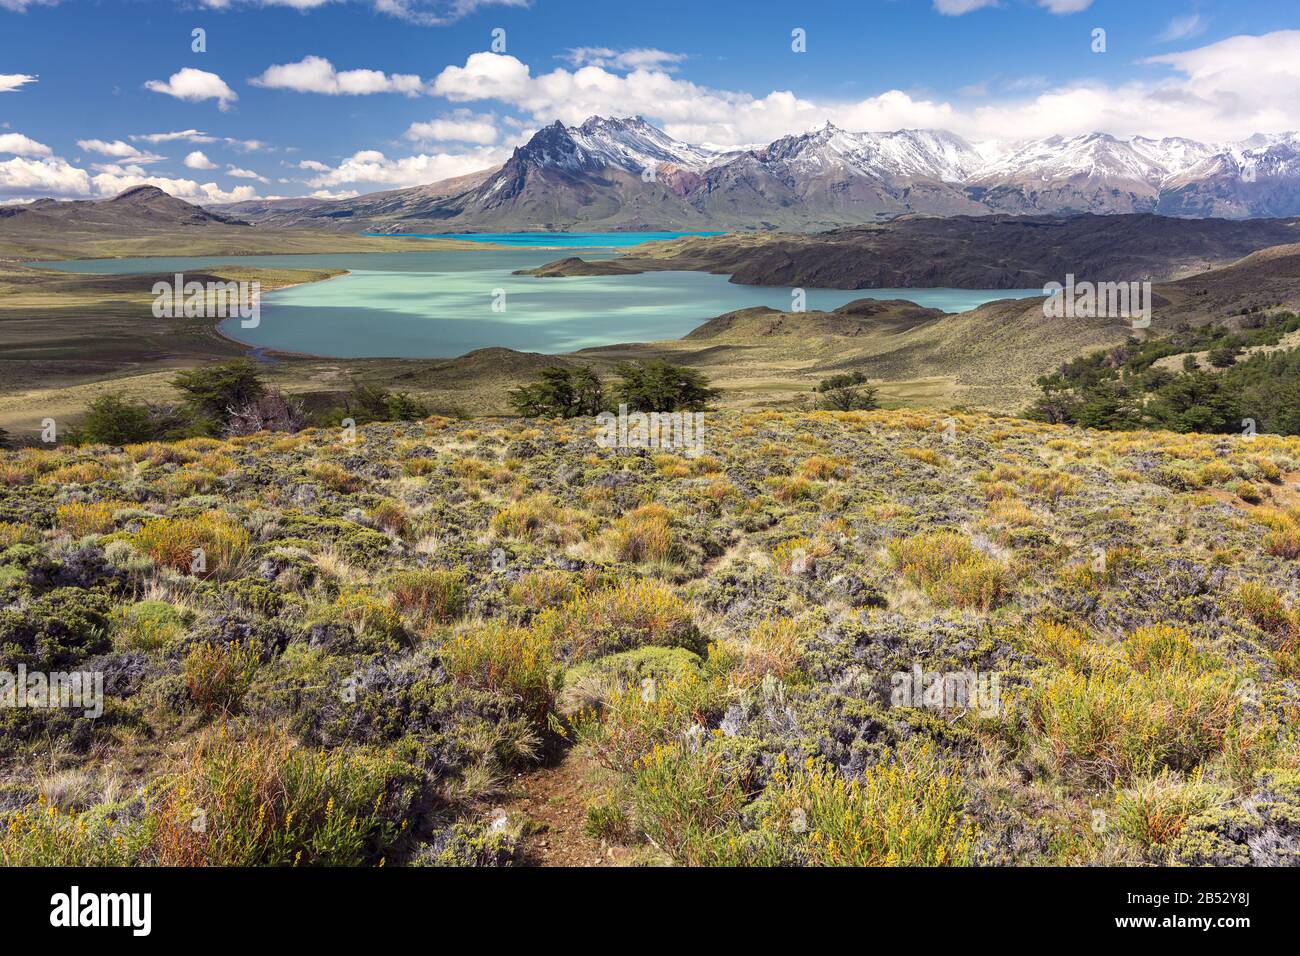 Lago Belgrano and the snowcapped Andes, Parque Nacional Perito Moreno, Patagonia Argentina Stock Photo